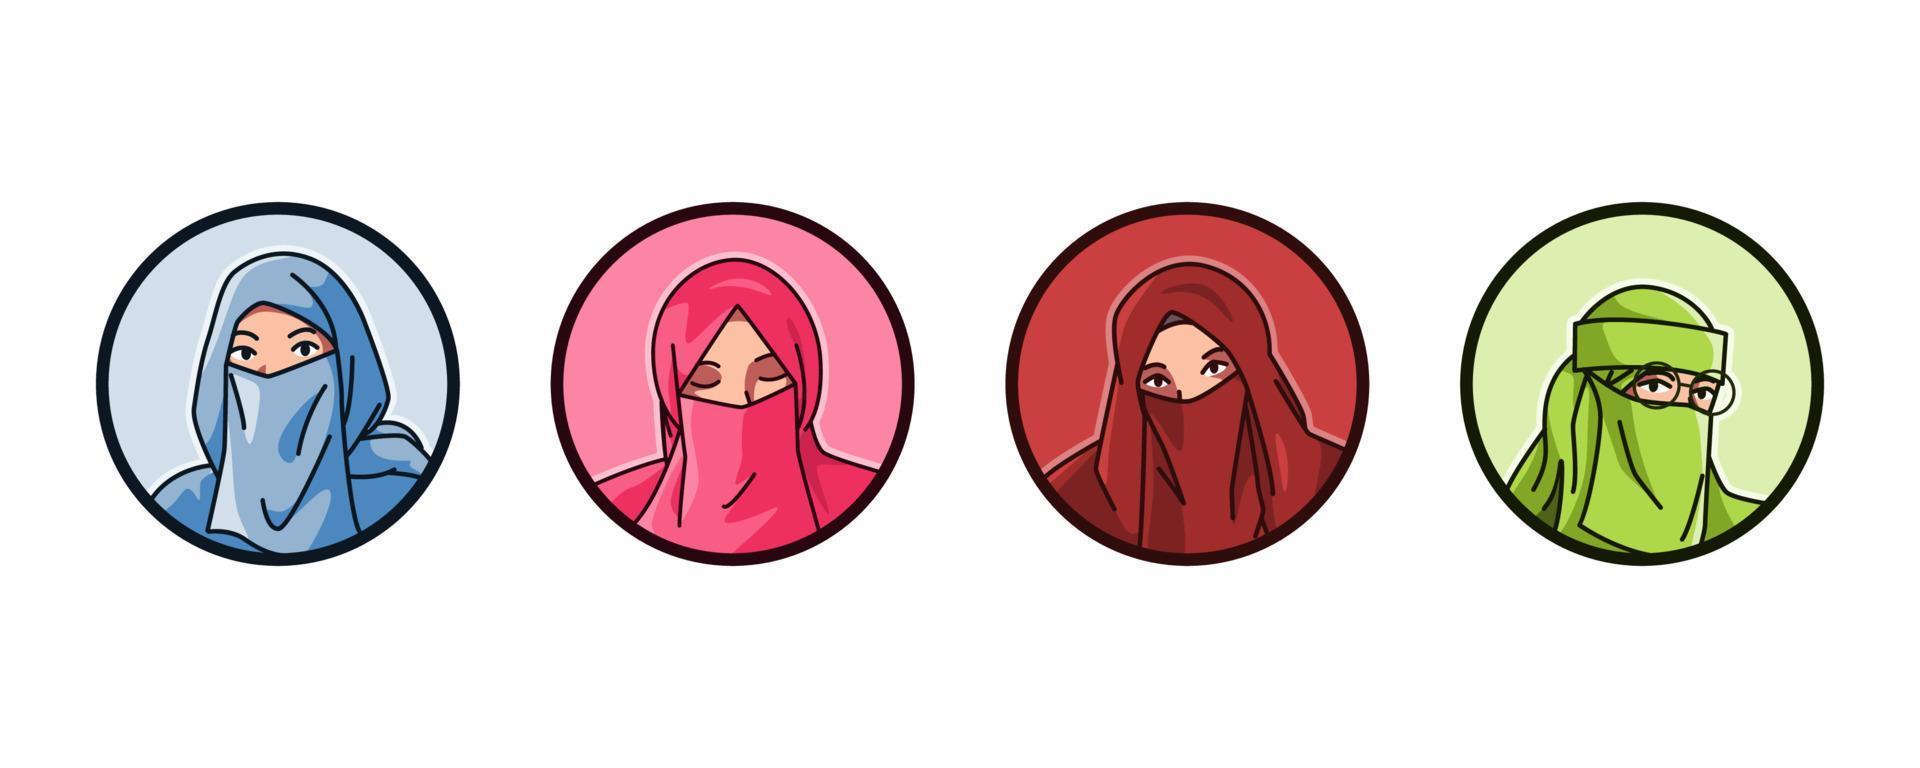 uppsättning avatar av en kvinna tecken ha på sig niqab. islamic slöja, huvudduk. runda, cirkel ikon för social media, användare profil, hemsida, app. linje tecknad serie stil. vektor illustration.